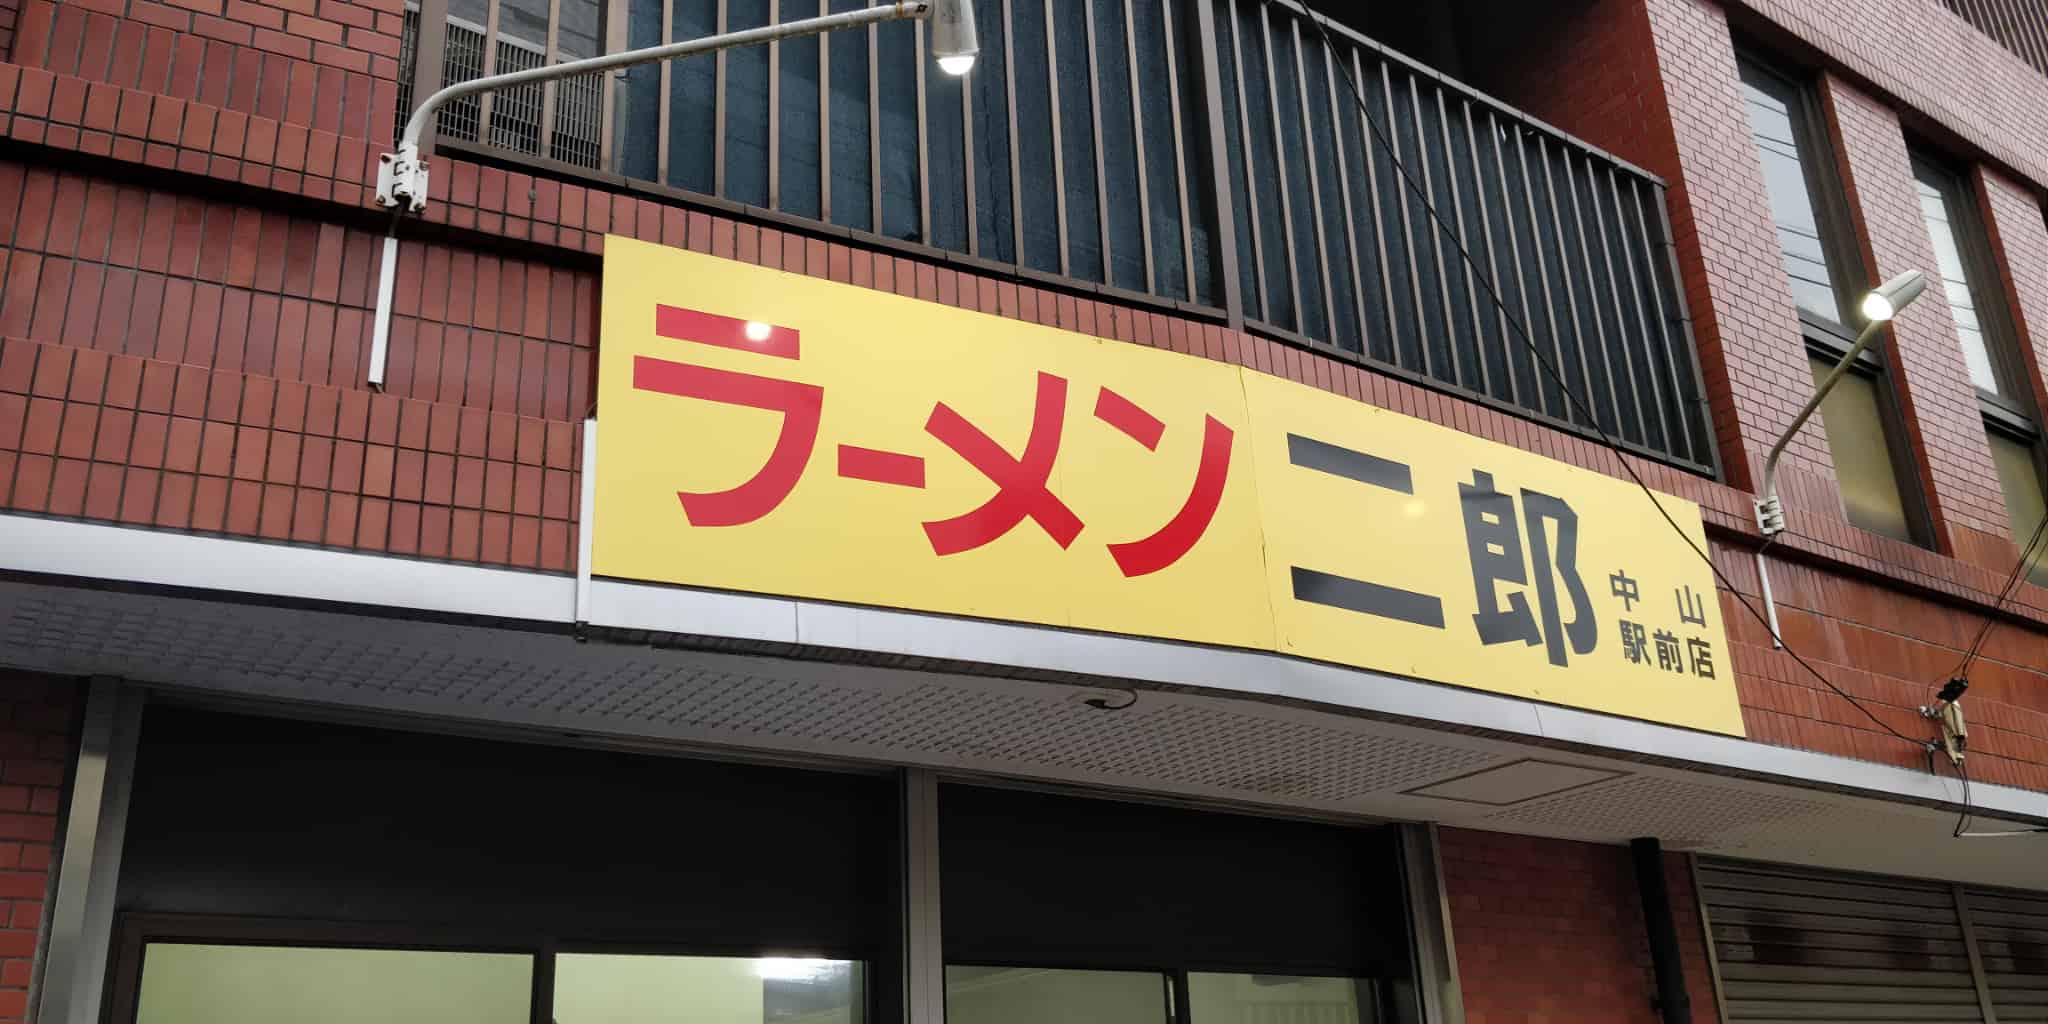 初めての方へ ラーメン二郎 中山駅前店 のルール 並び方など詳しく解説します